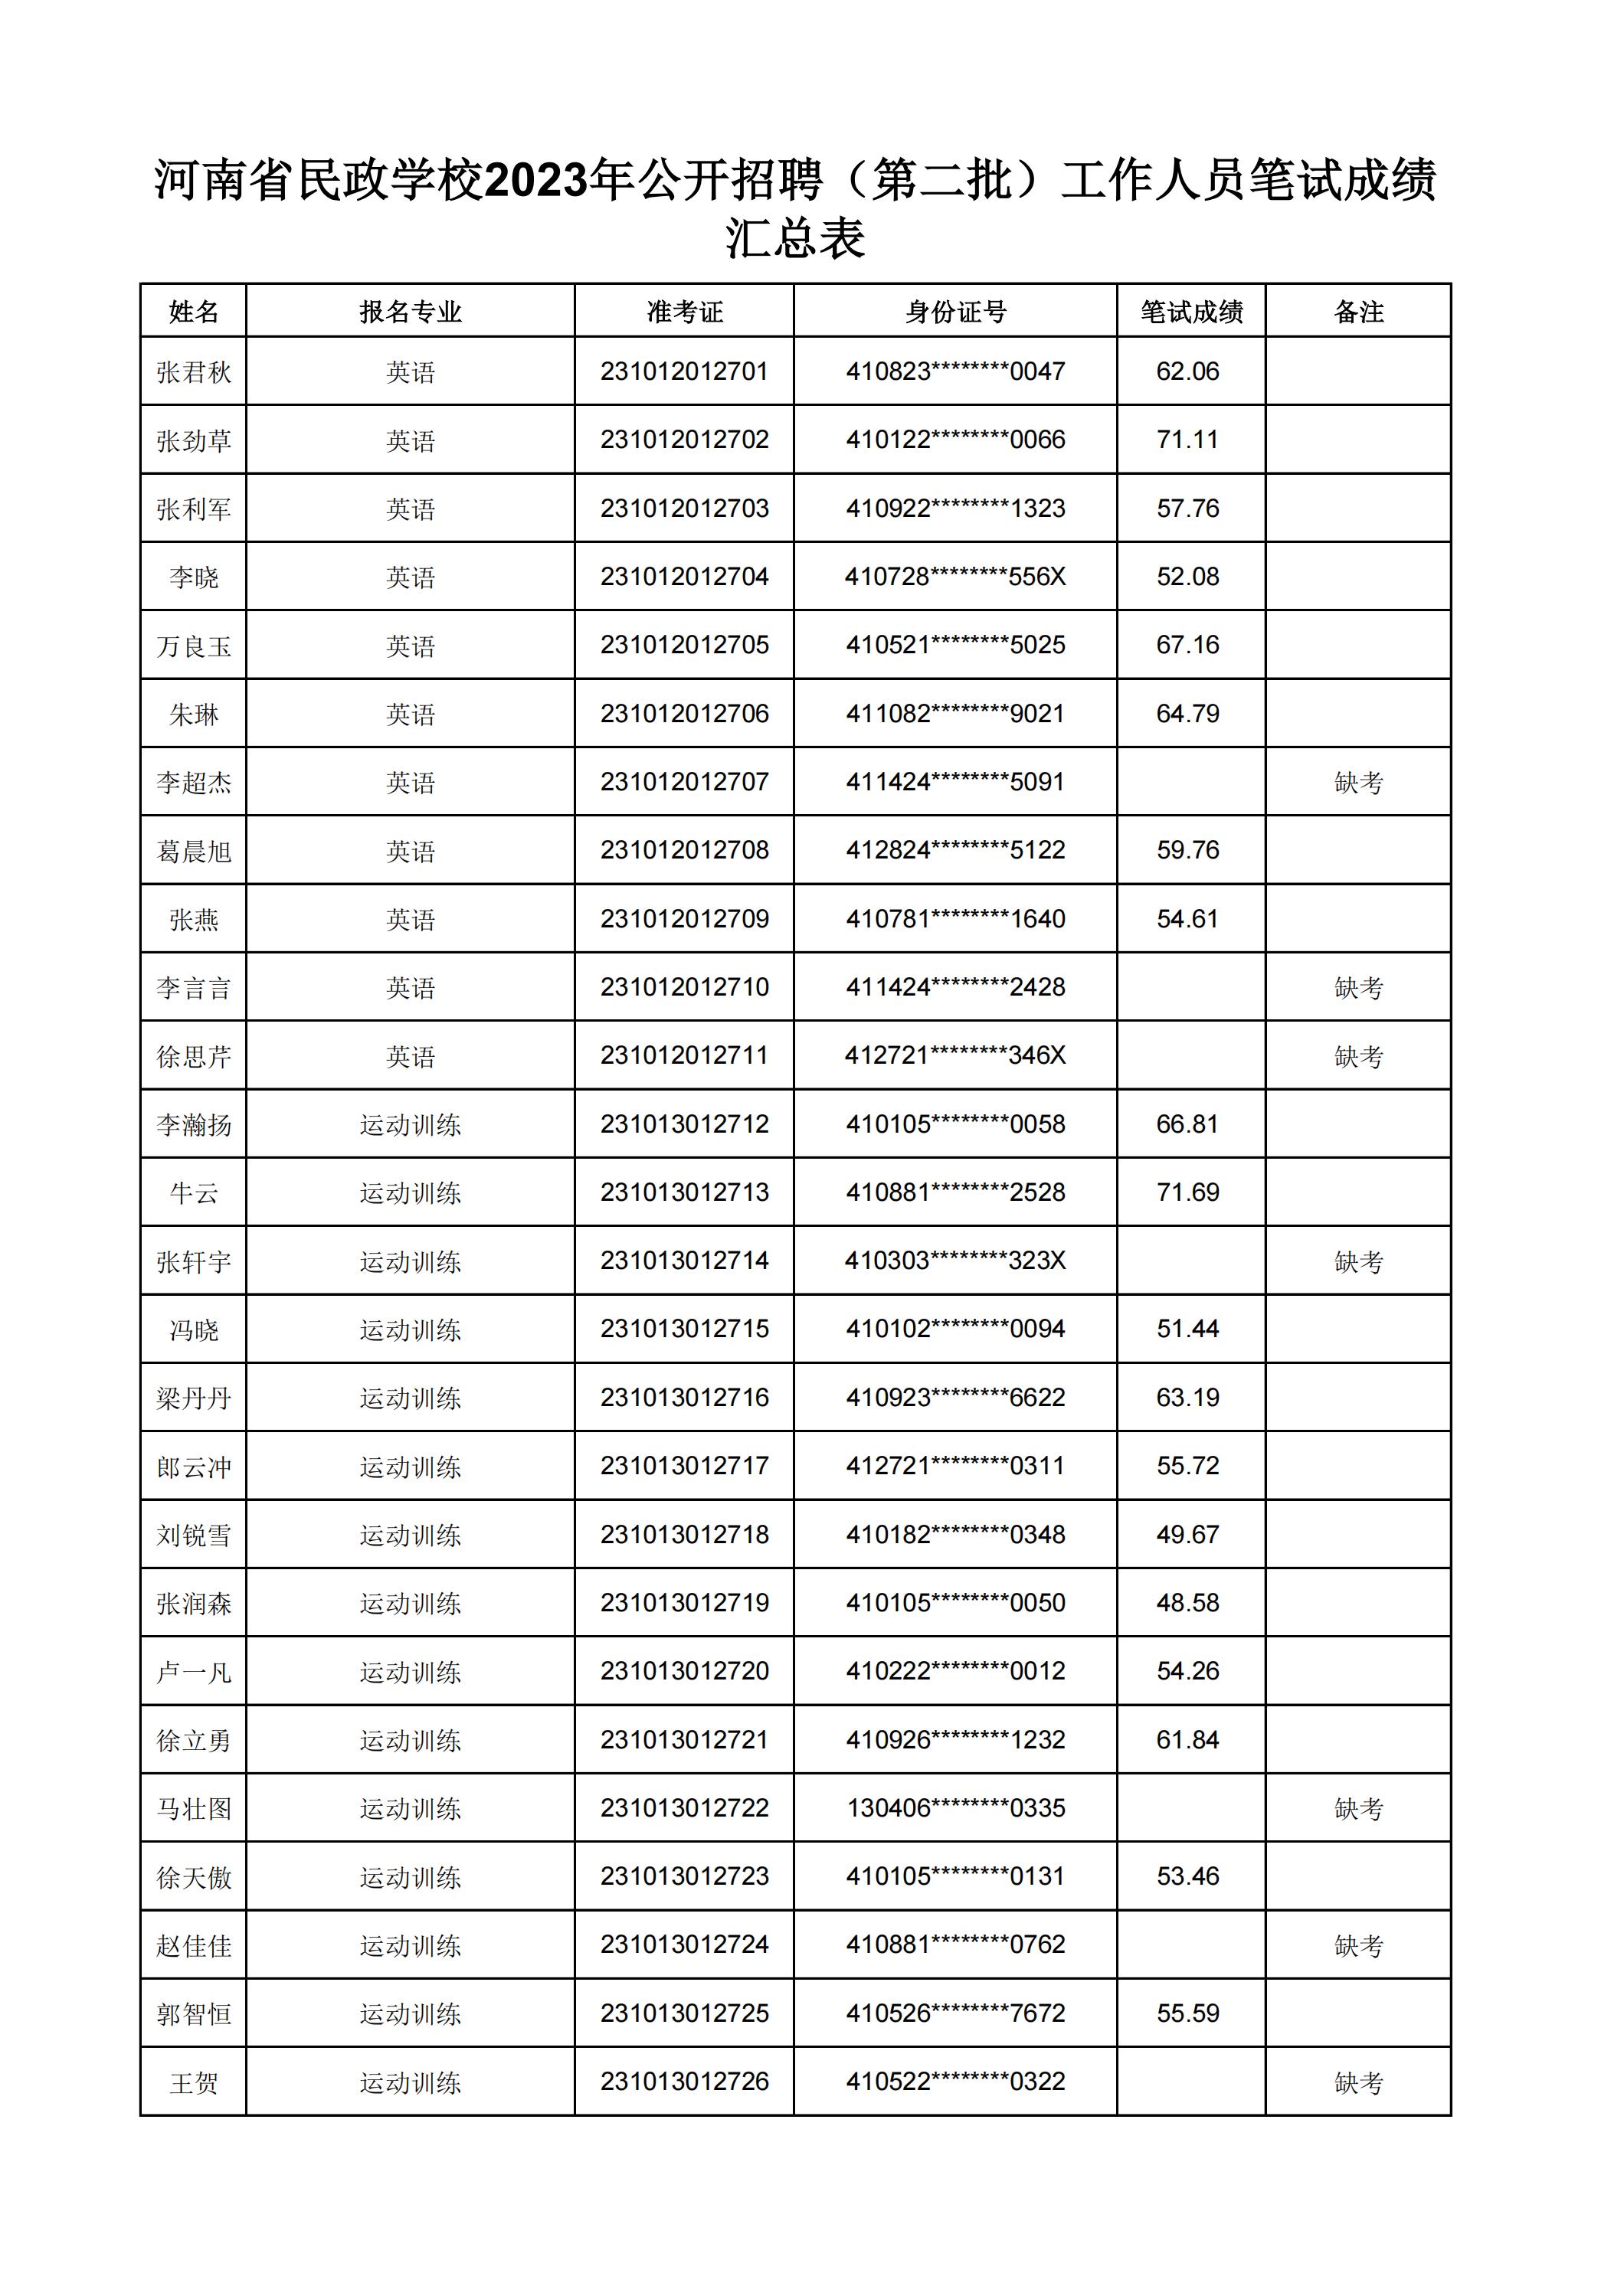 河南省民政学校2023年公开招聘（第二批）工作人员笔试成绩汇总表(2)_30.jpg